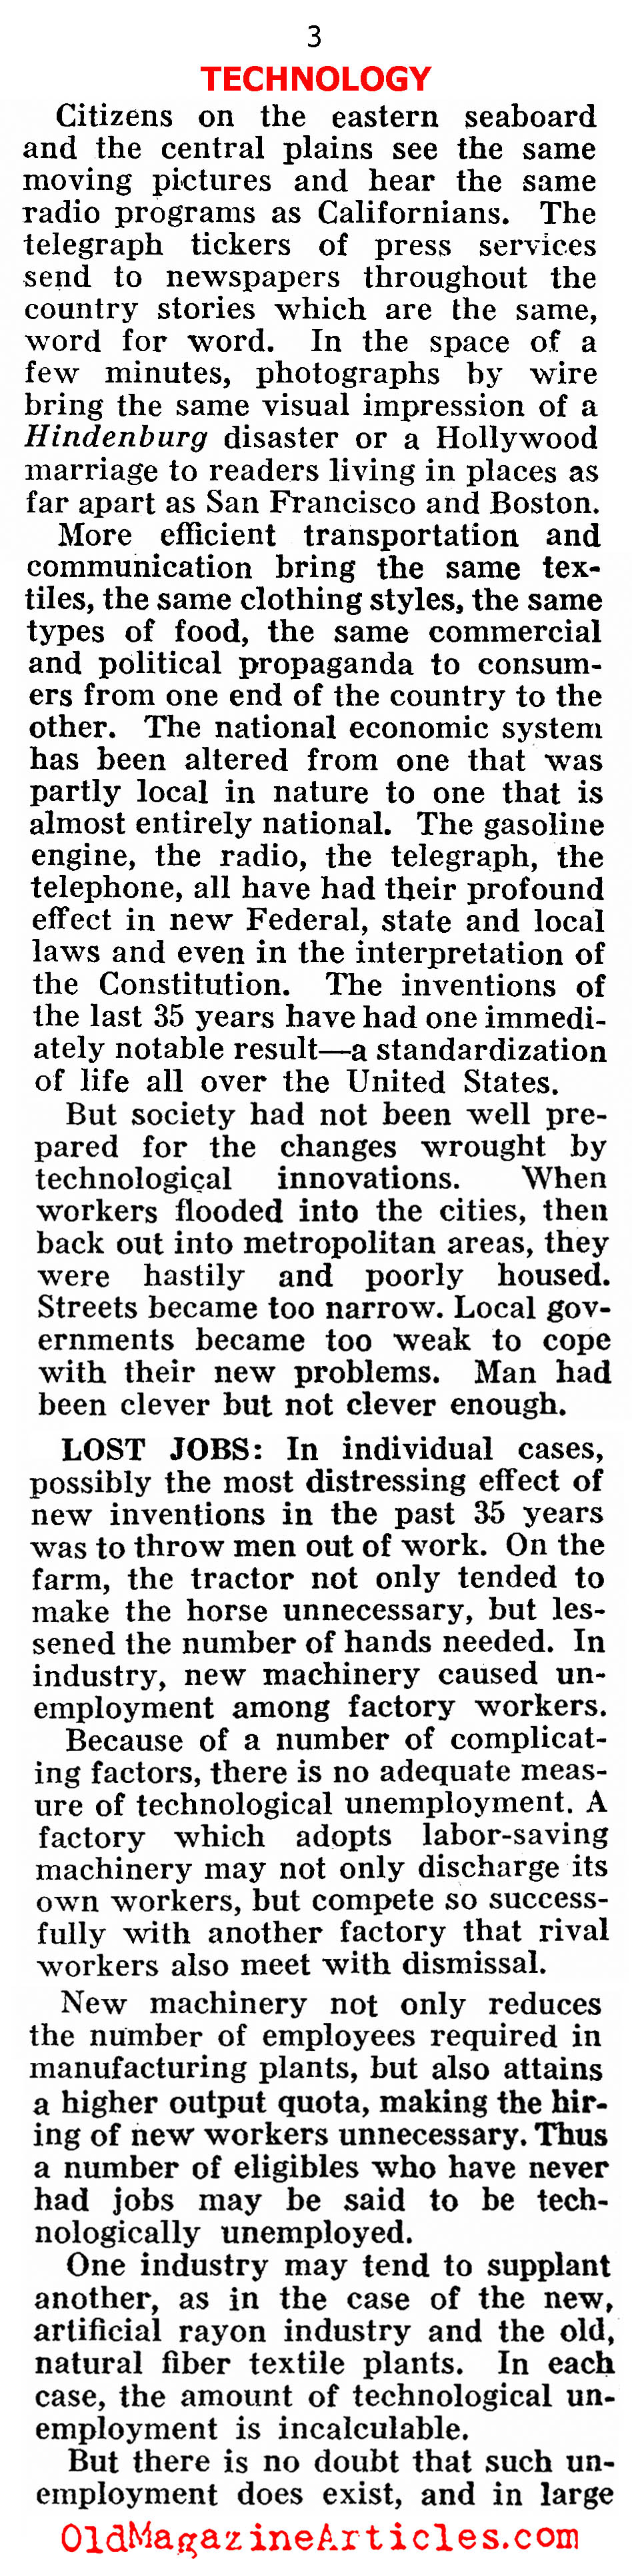 Understanding Unemployment (Pathfinder Magazine, 1937)